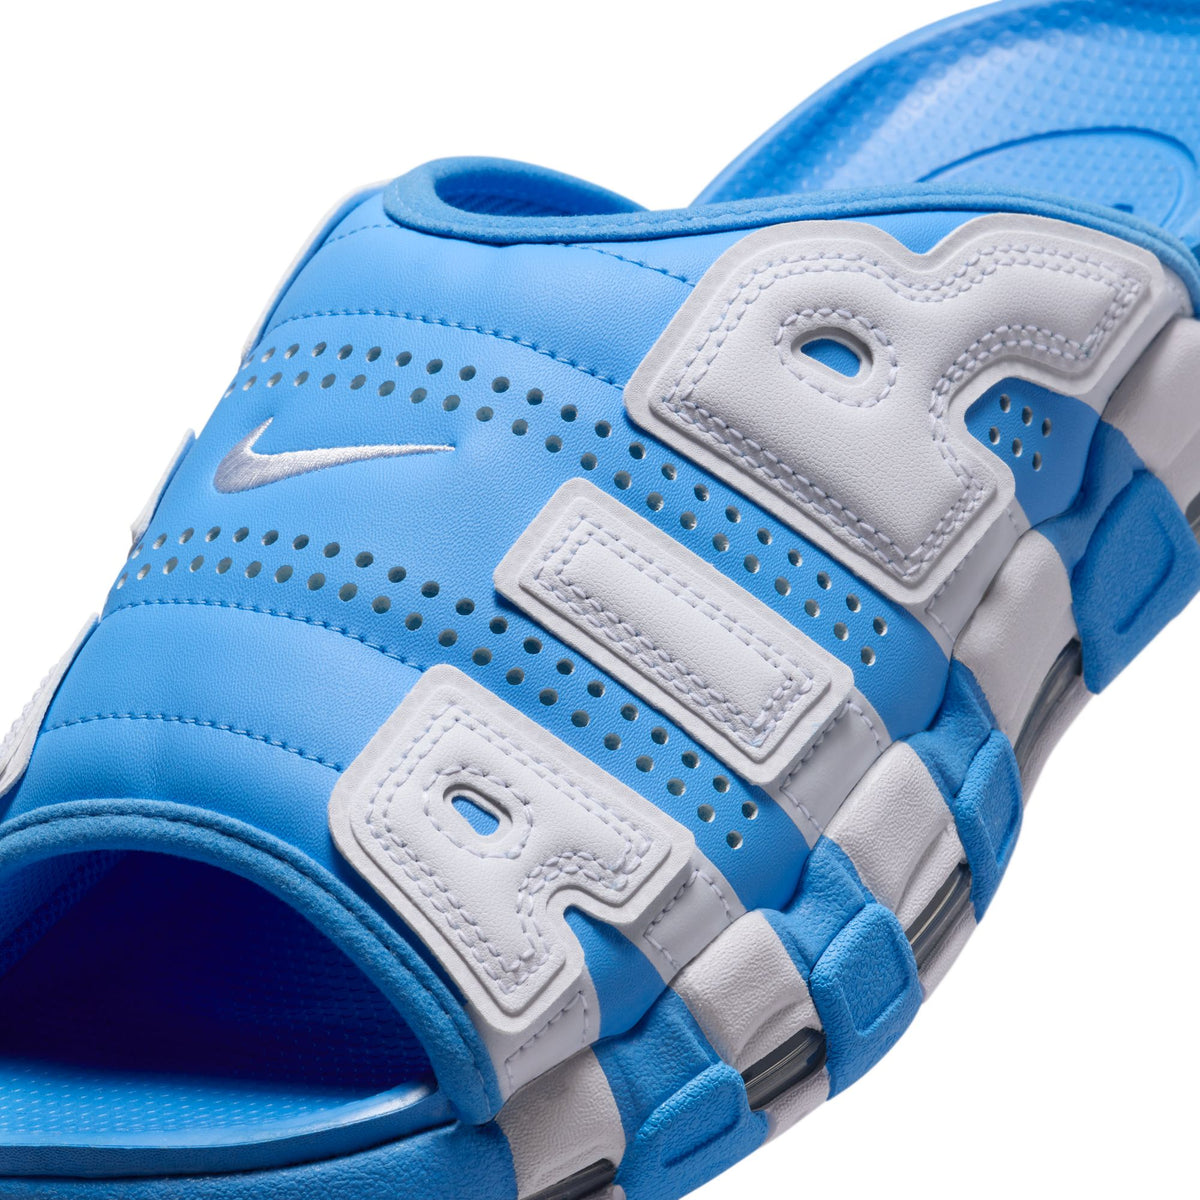 Nike Air More Uptempo Slide "University Blue" - Men